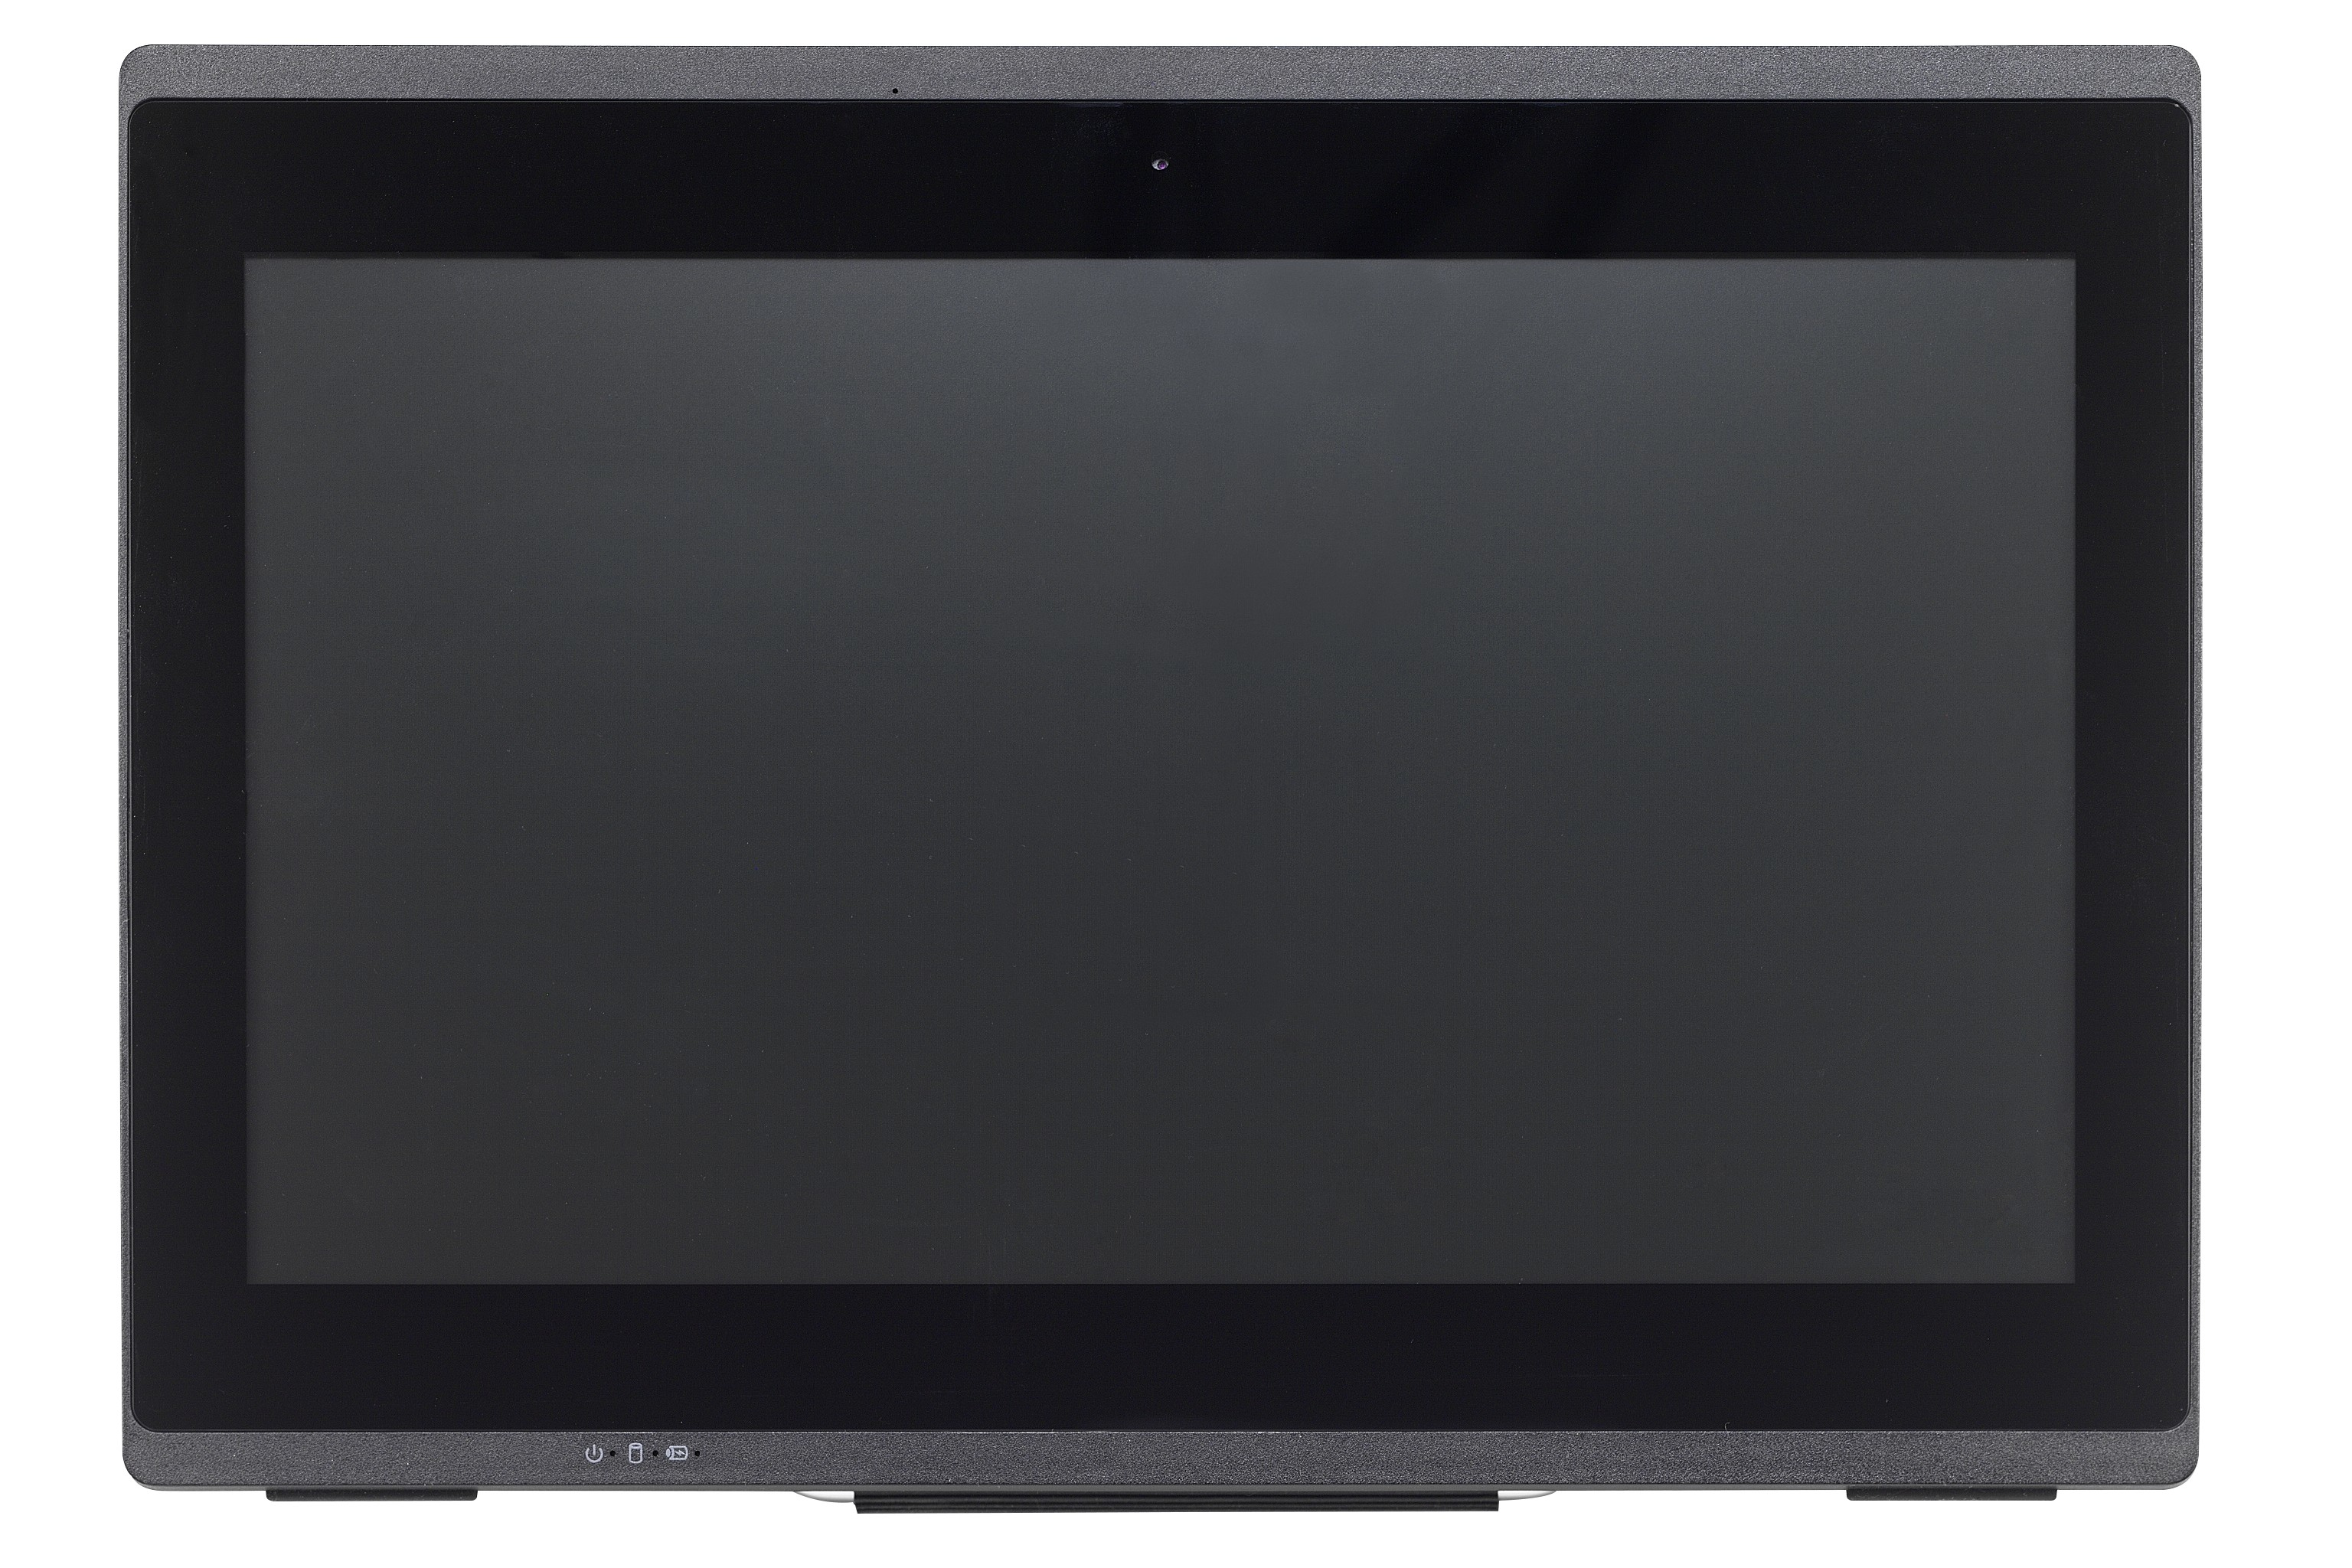 Shuttle PAB-P52U301 P52U3All-In-One Barebone Core i3-10110U 15.6“ multi-touch screen